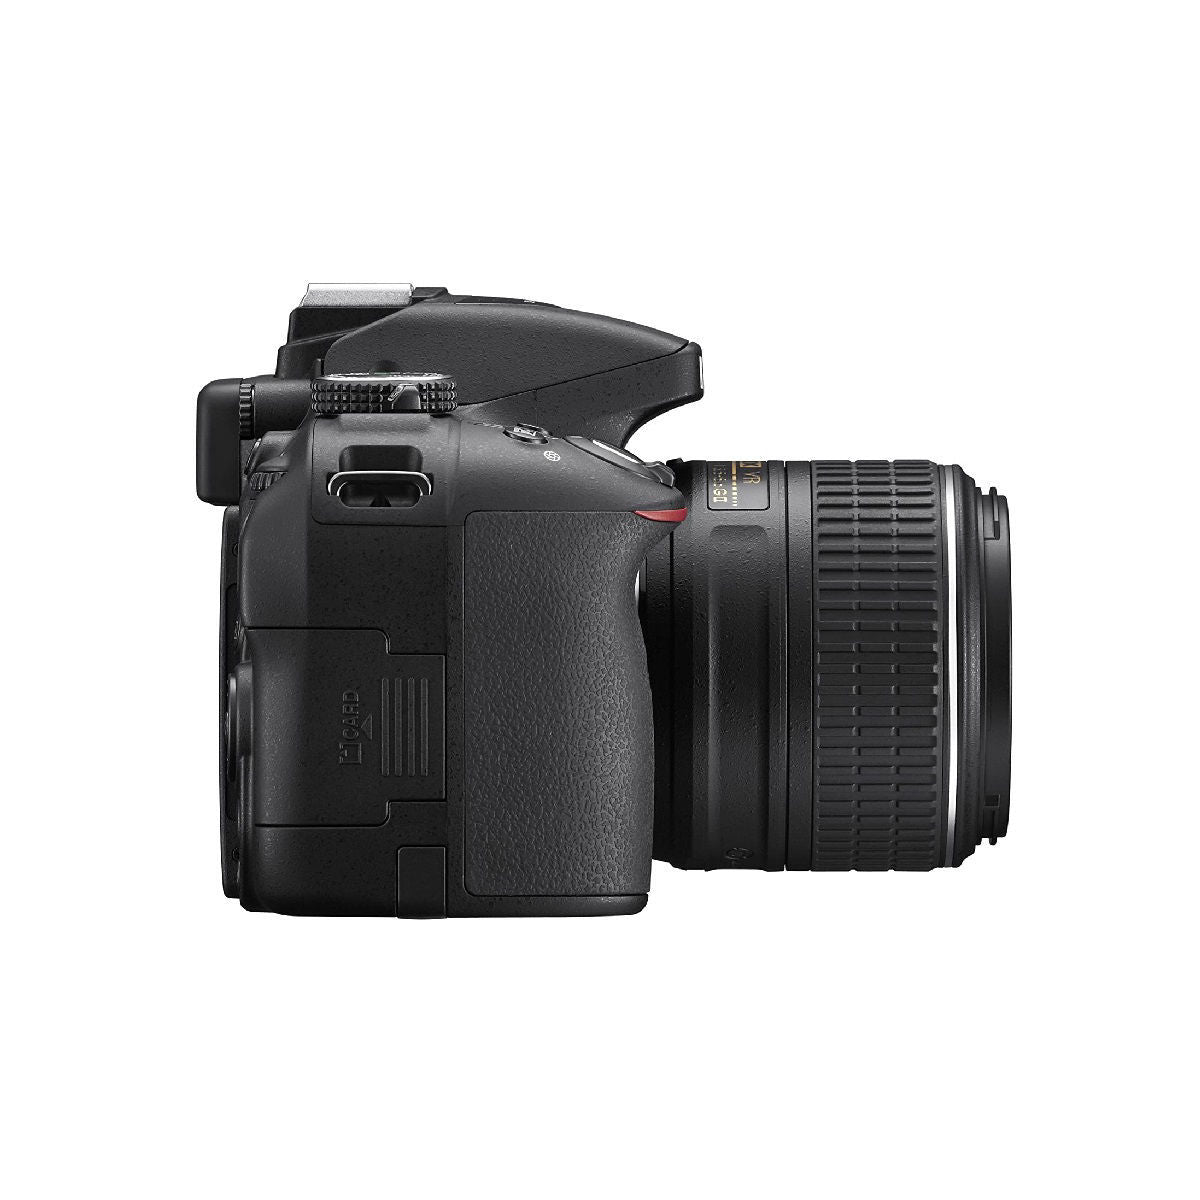 Nikon Digital Camera D5300 Black Kit with AF S DX 18 55 3.5-5.6G VR Lens